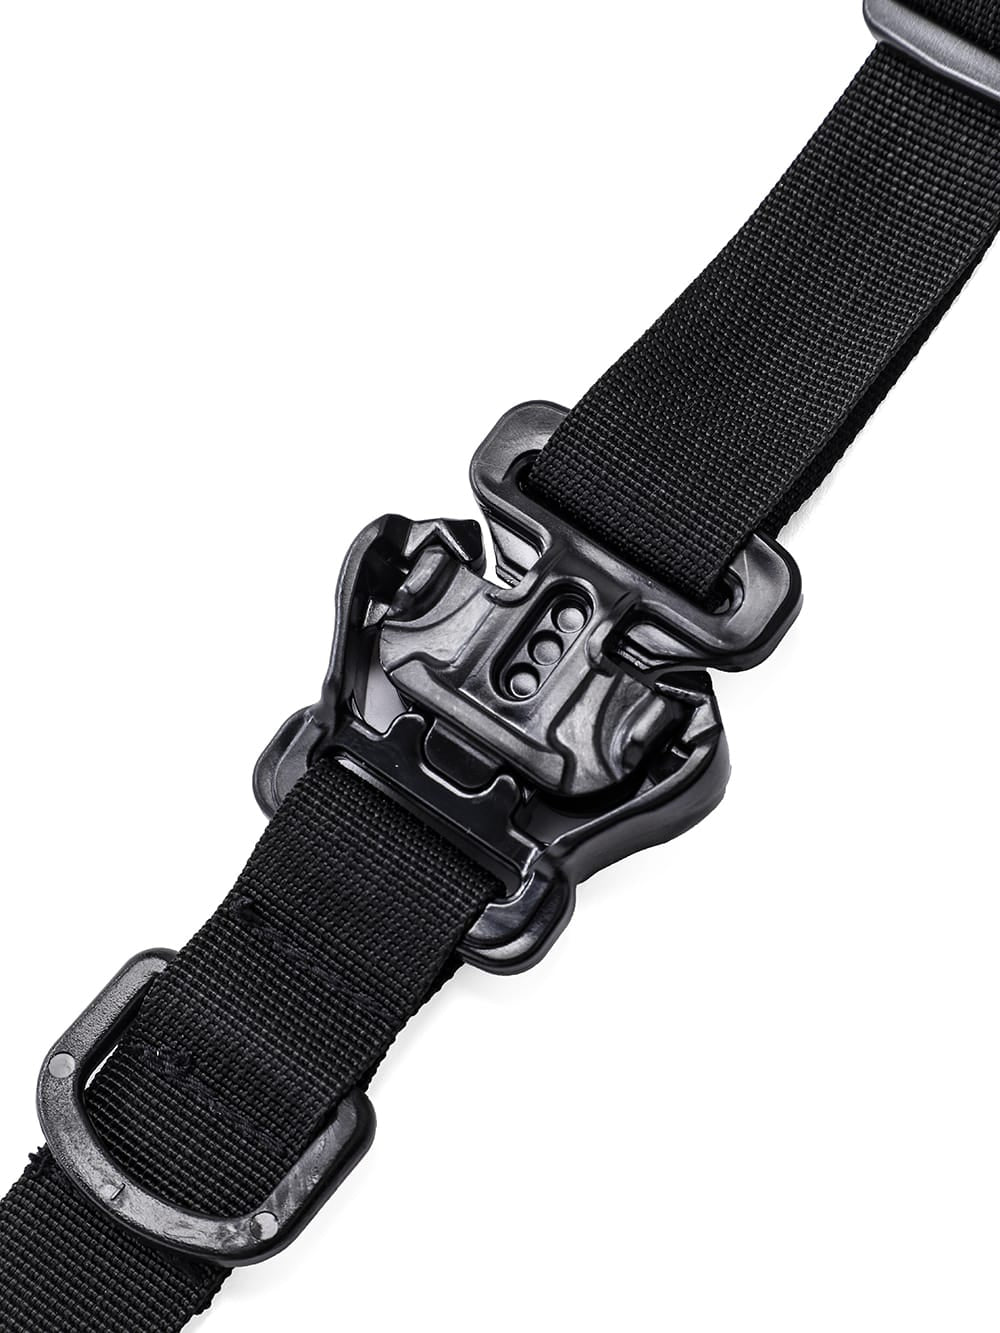 Tactical buckle belt